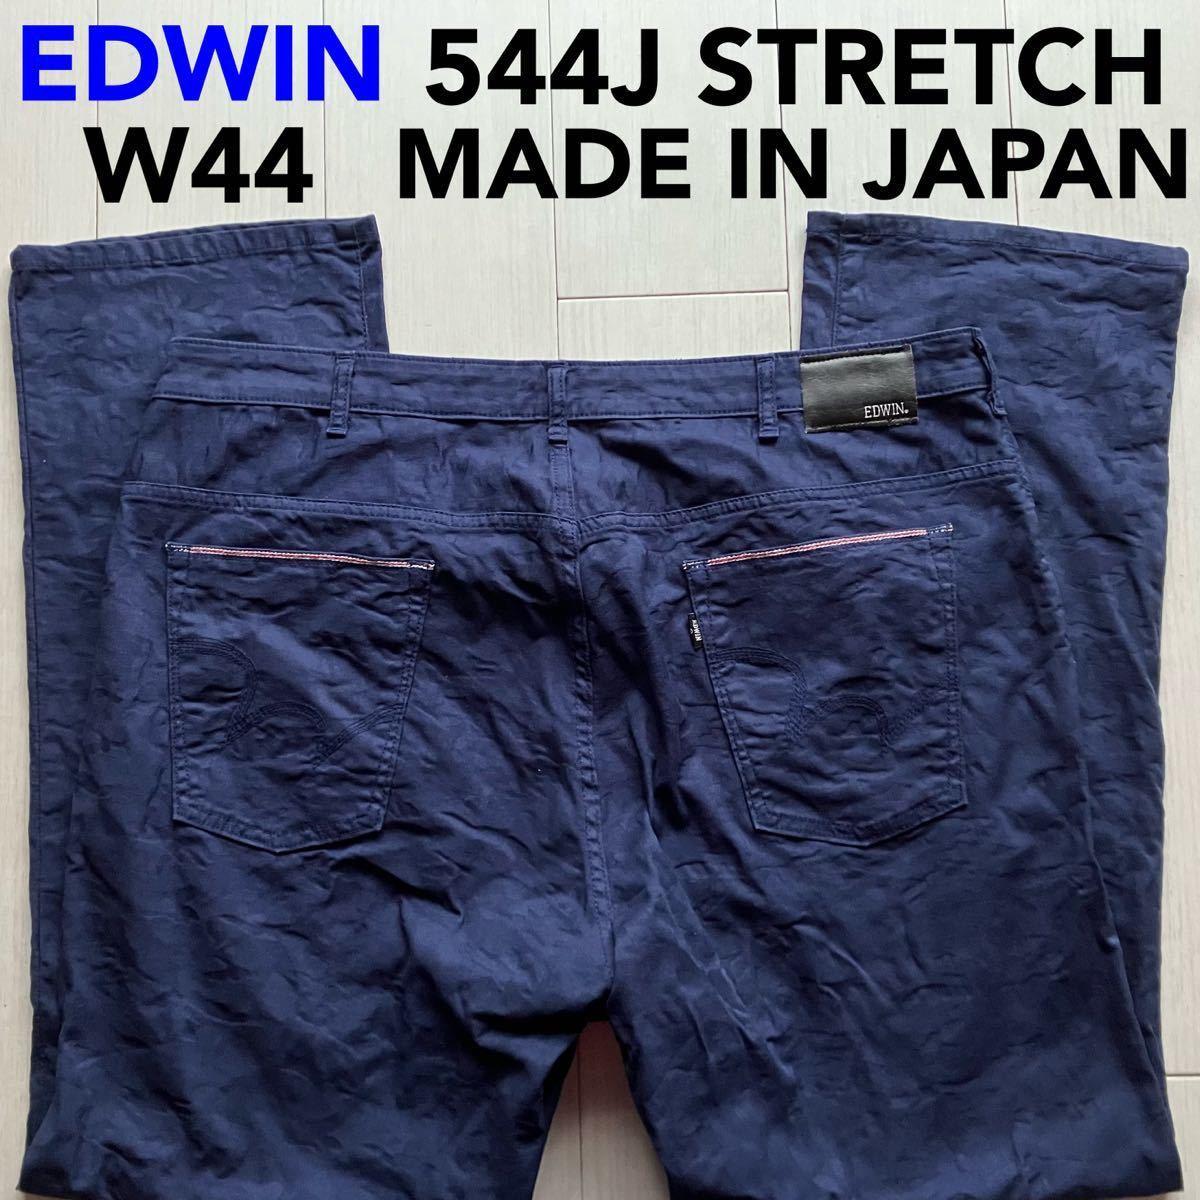 即決 W44 エドウィン EDWIN 544J 軽量 柔らかストレッチ 春夏モデル ライトオンス 日本製 ストレート カラーパンツ ネイビー 紺色_画像1